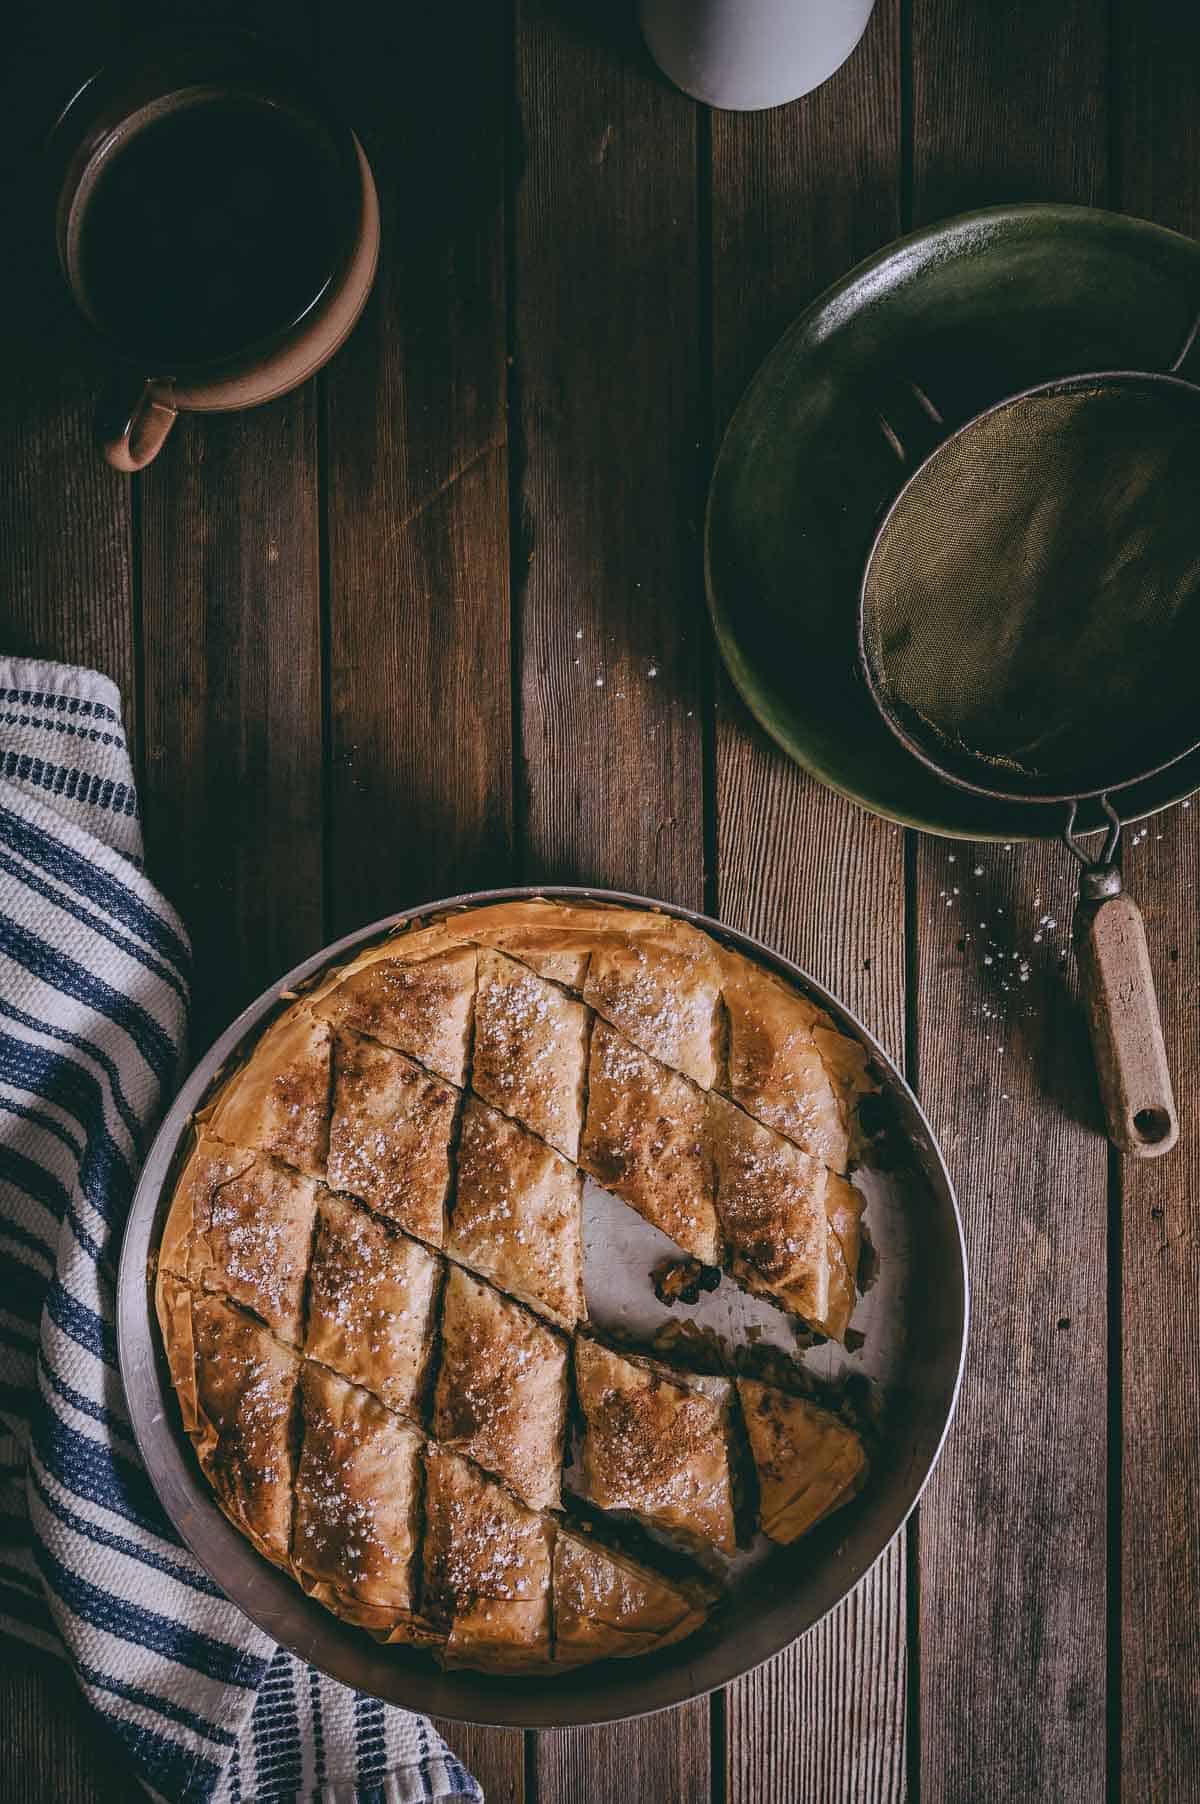 Greek pumpkin pie in a round baking pan on a wooden backdrop.